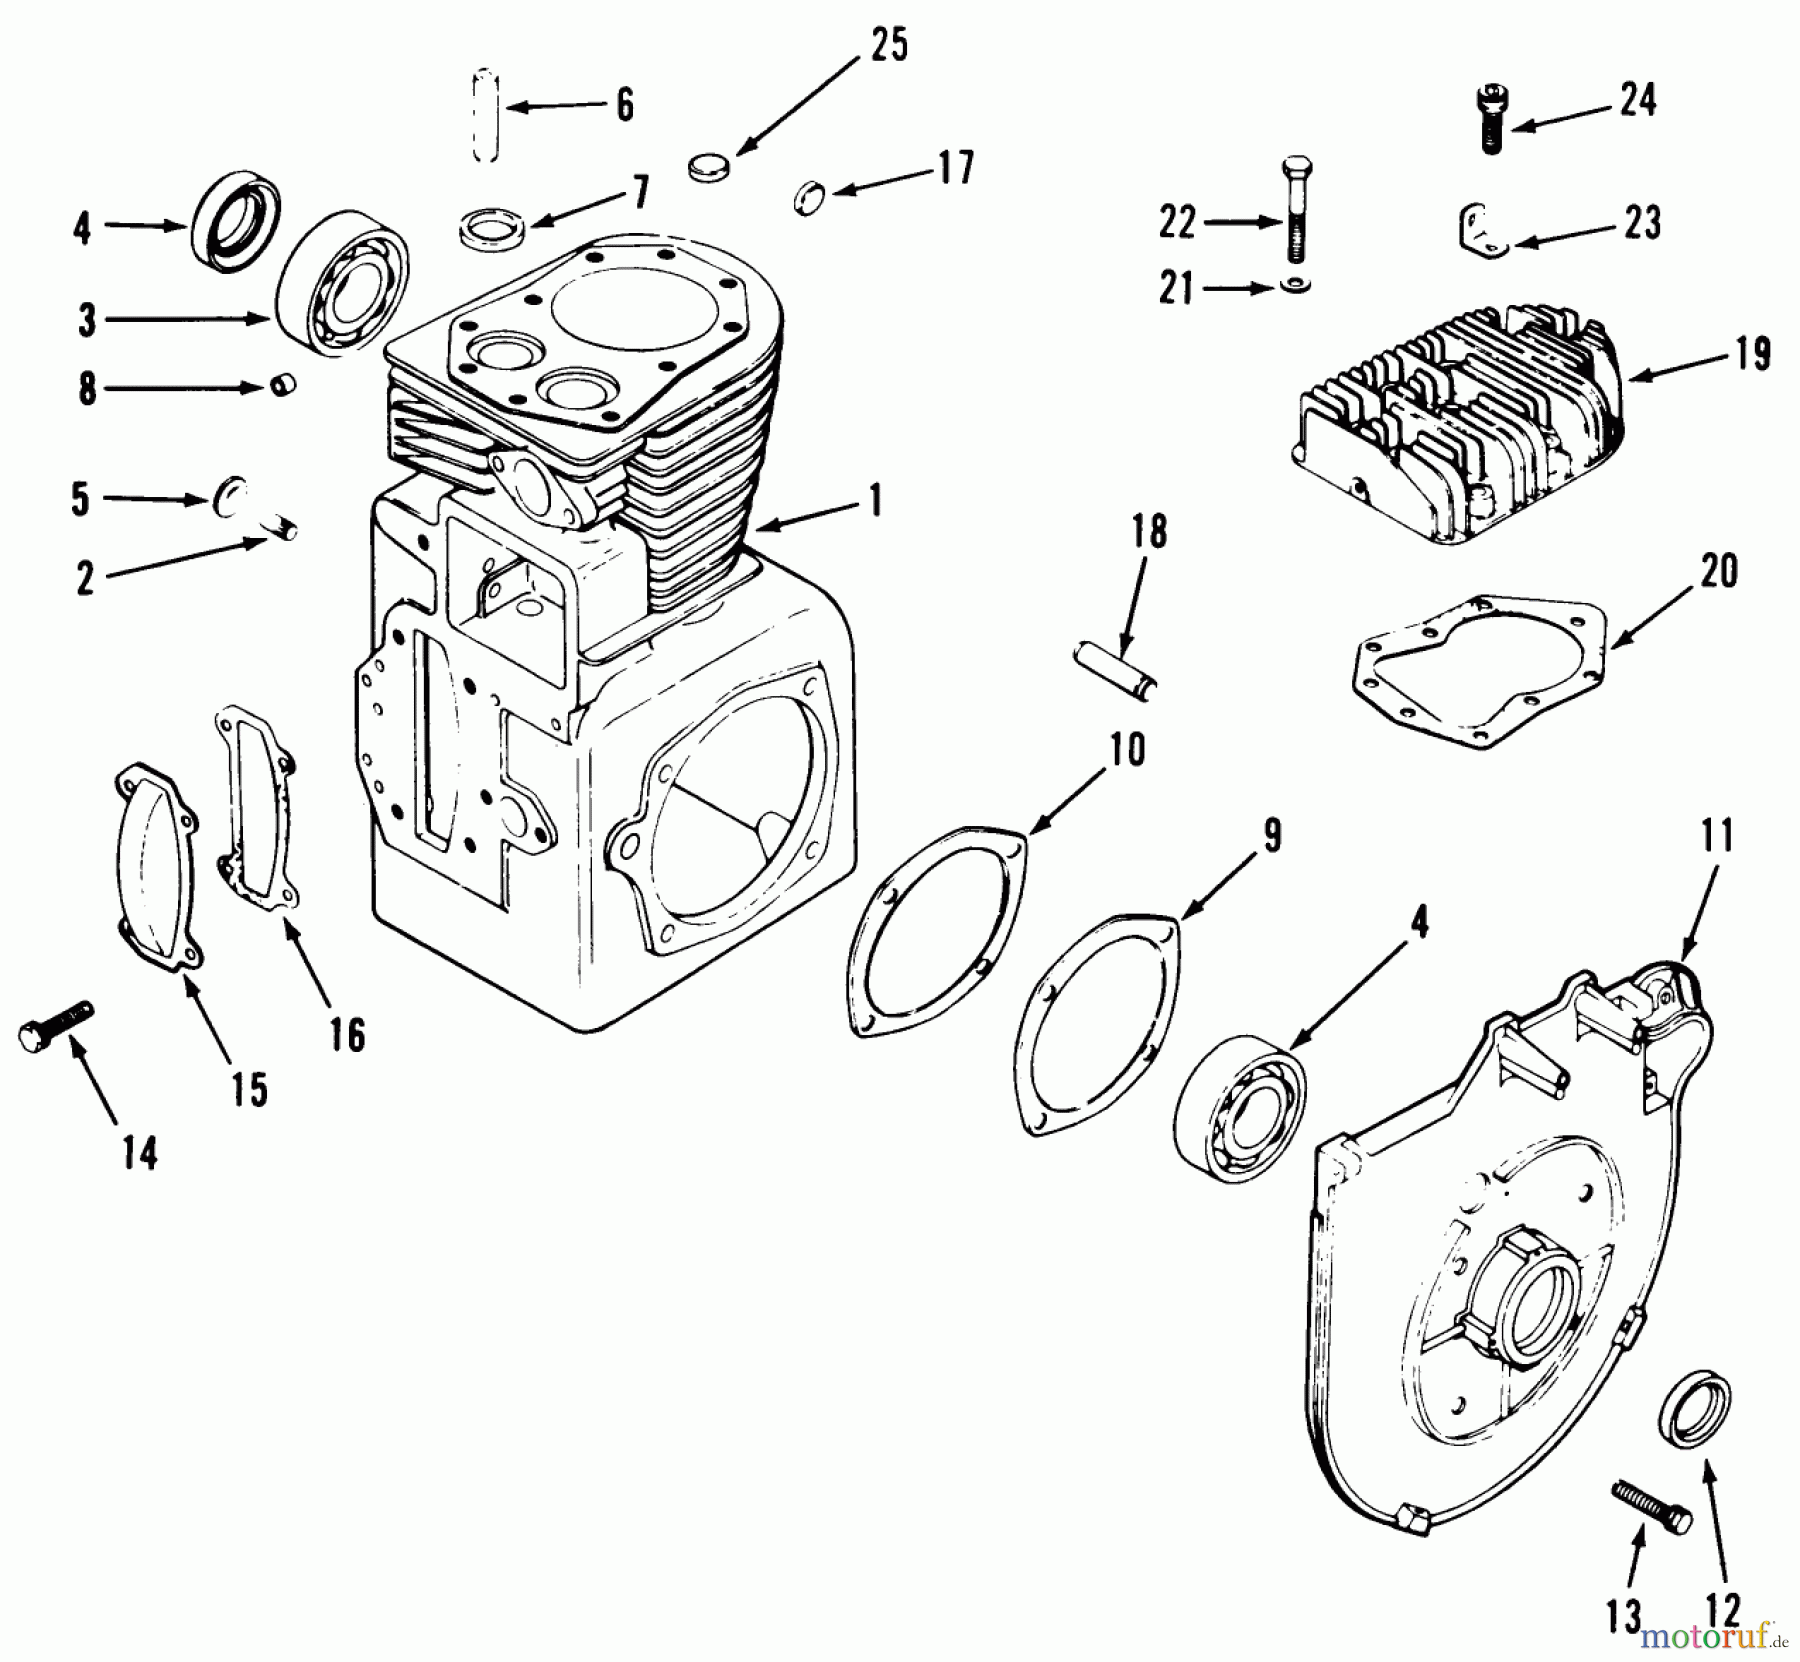  Toro Neu Mowers, Lawn & Garden Tractor Seite 1 51-16OE02 (416-H) - Toro 416-H Garden Tractor, 1992 (2000001-2999999) KOHLER CRANKCASE AND CYLINDER HEAD